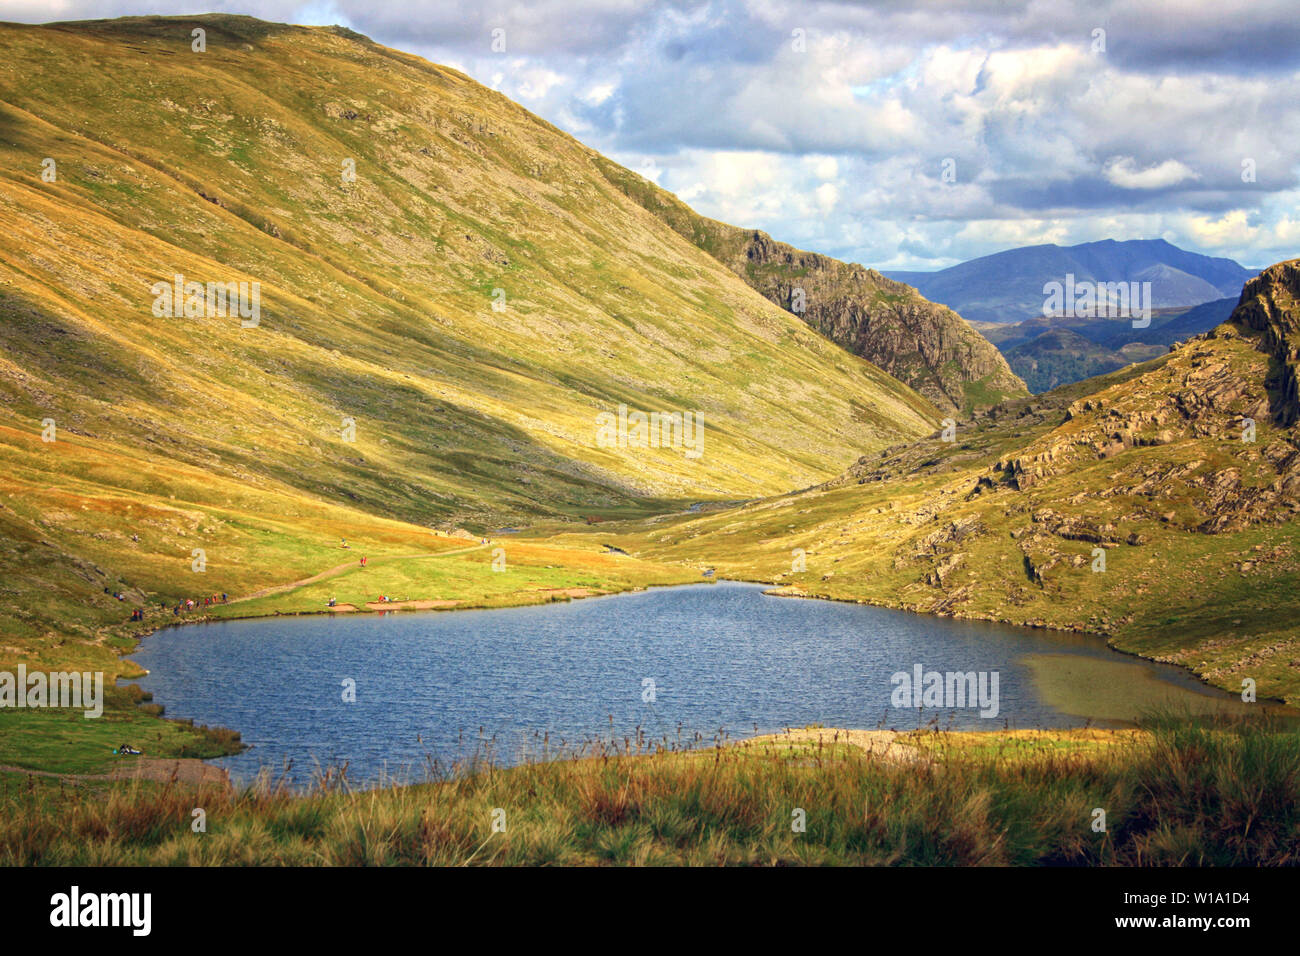 Une vue du Parc National du Lake District, Cumbria, England, UK. Banque D'Images